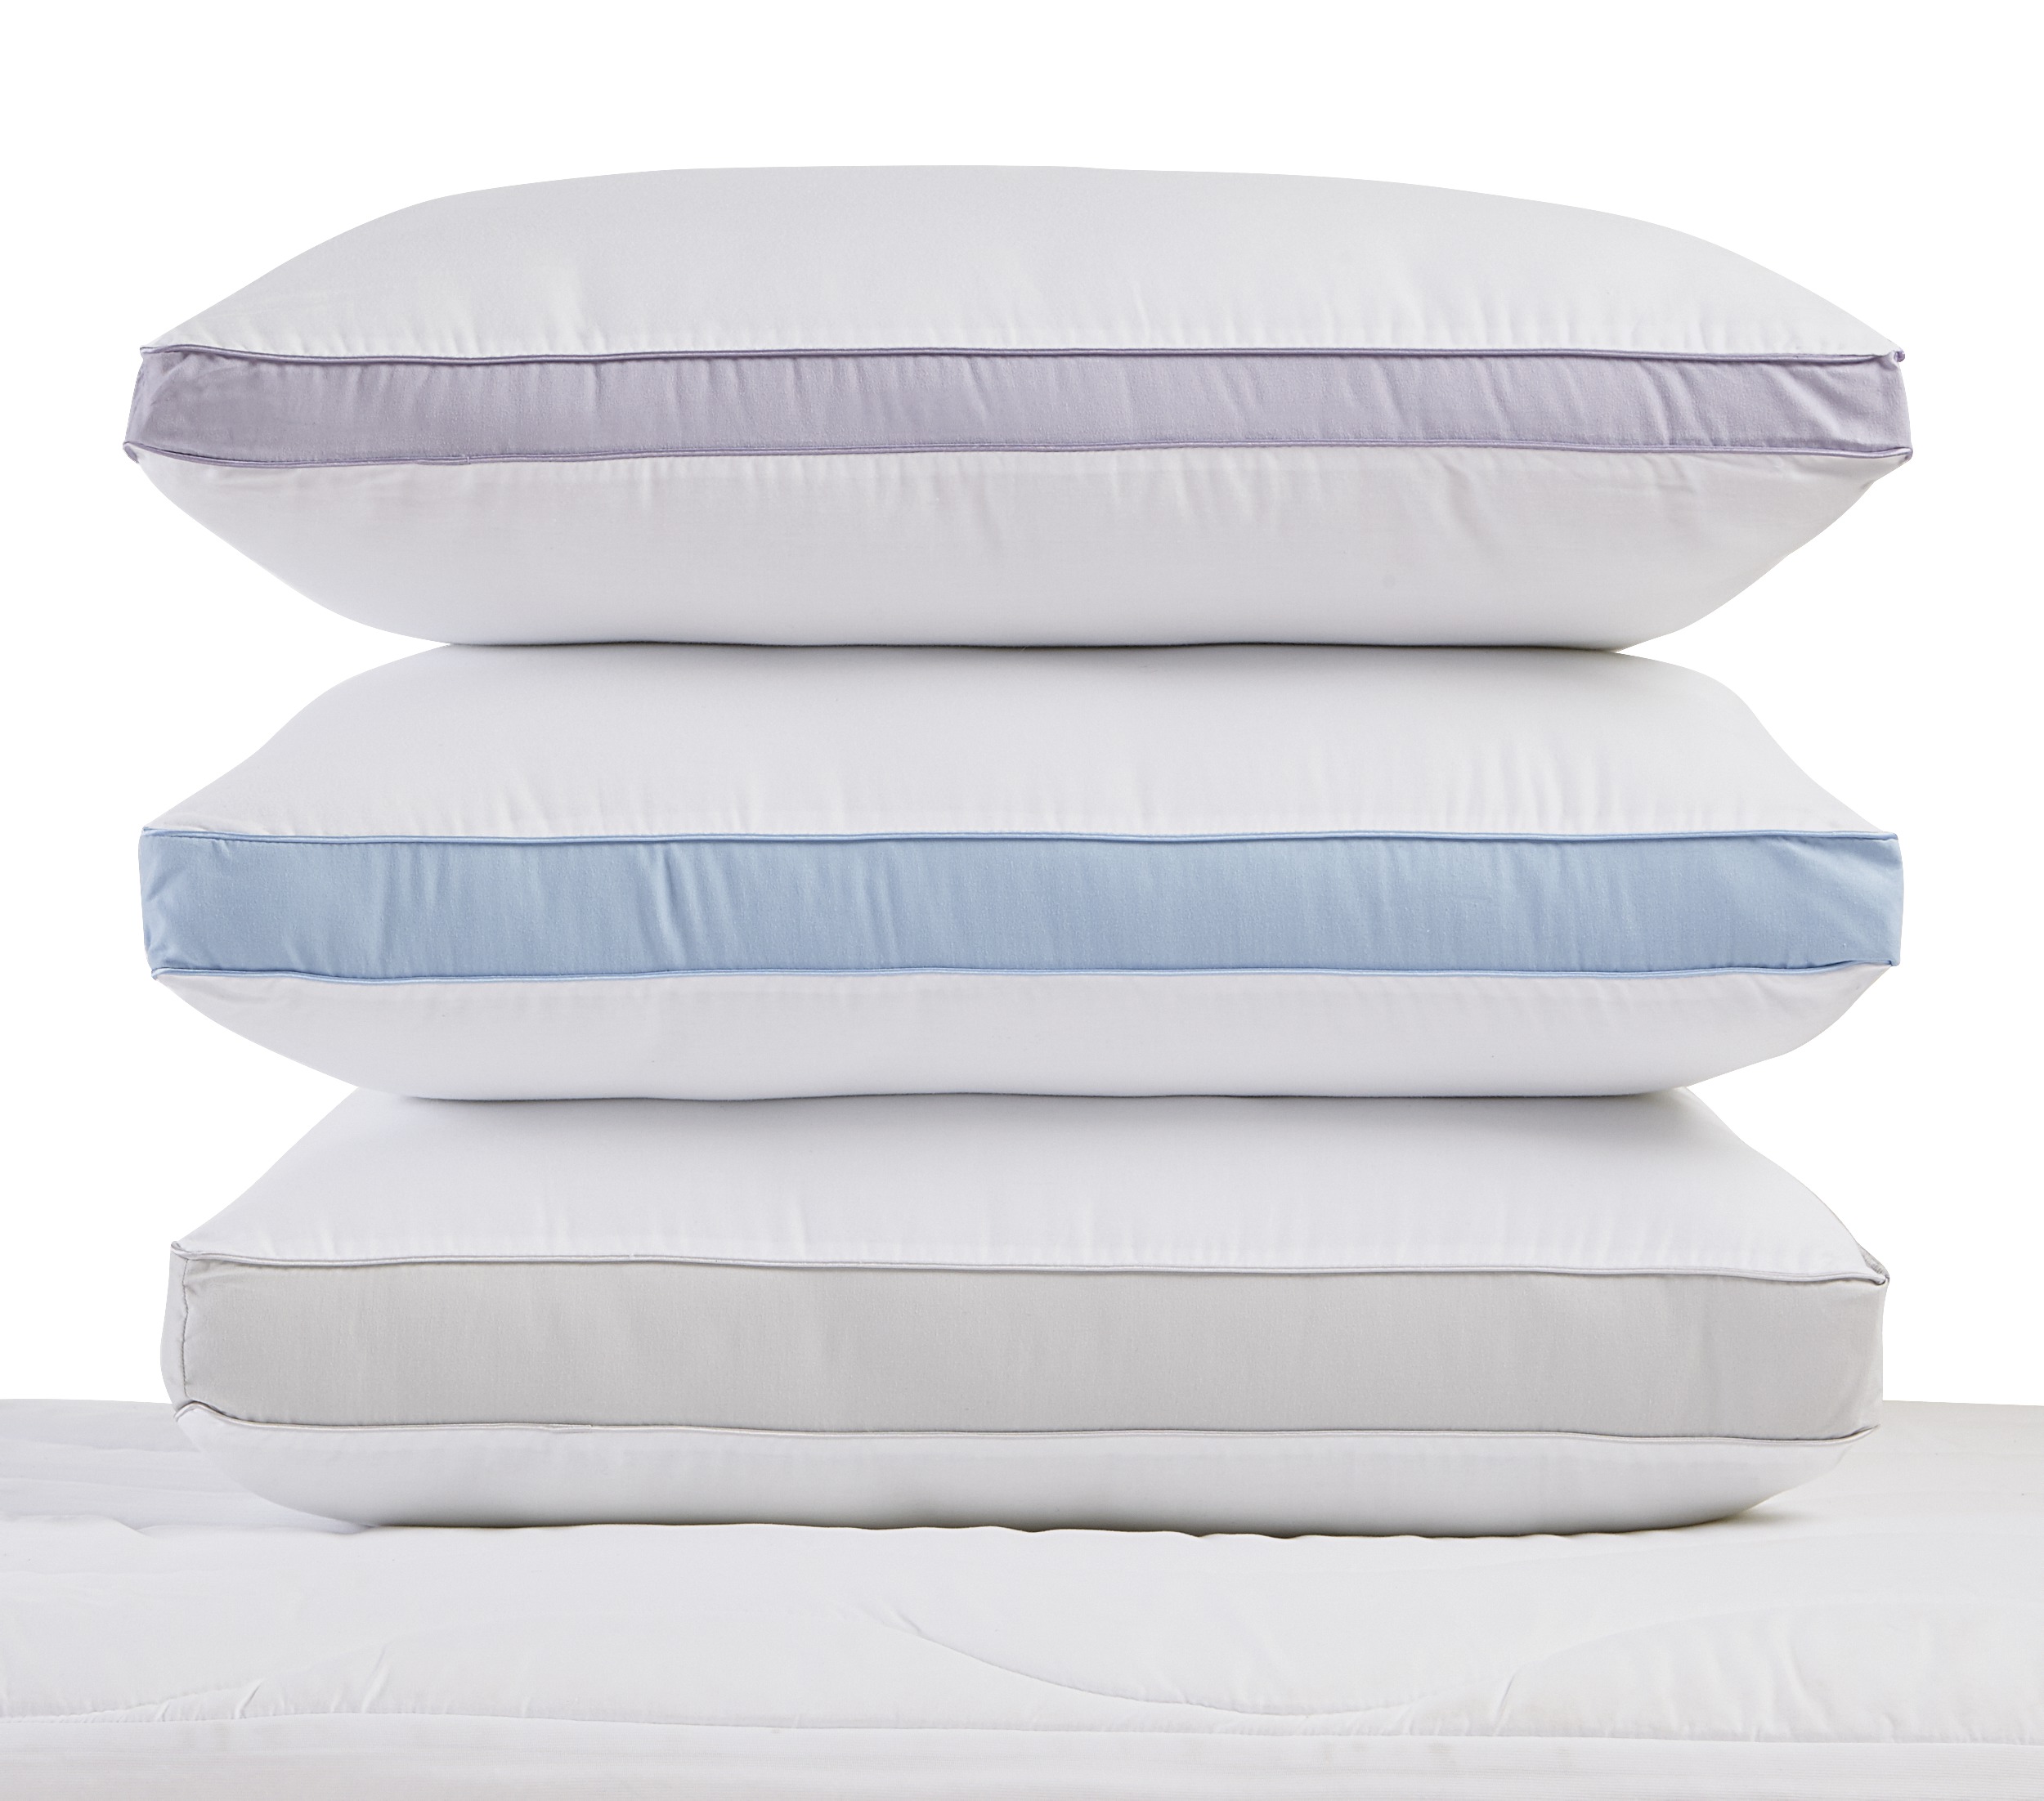 Bed Pillows - Kmart